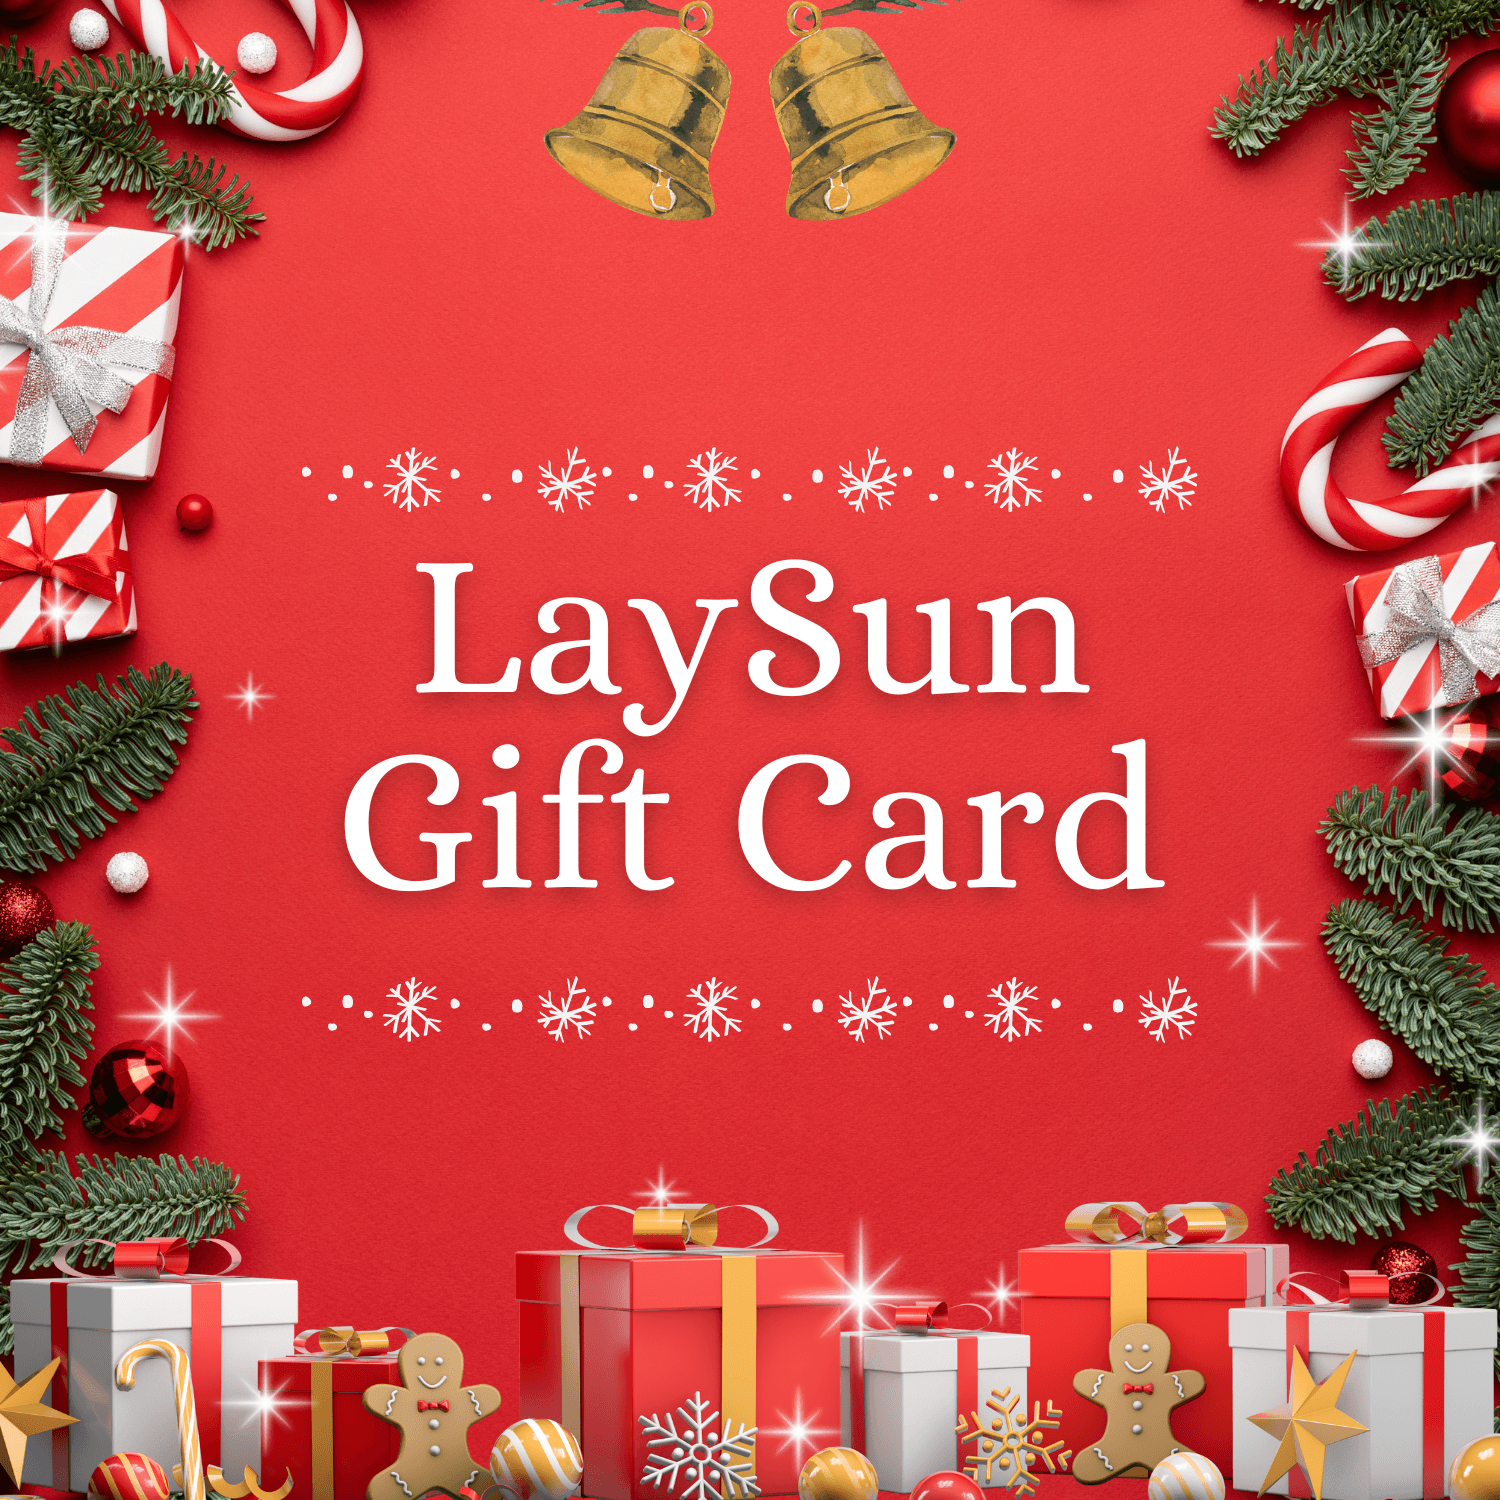 LaySun Gift Card